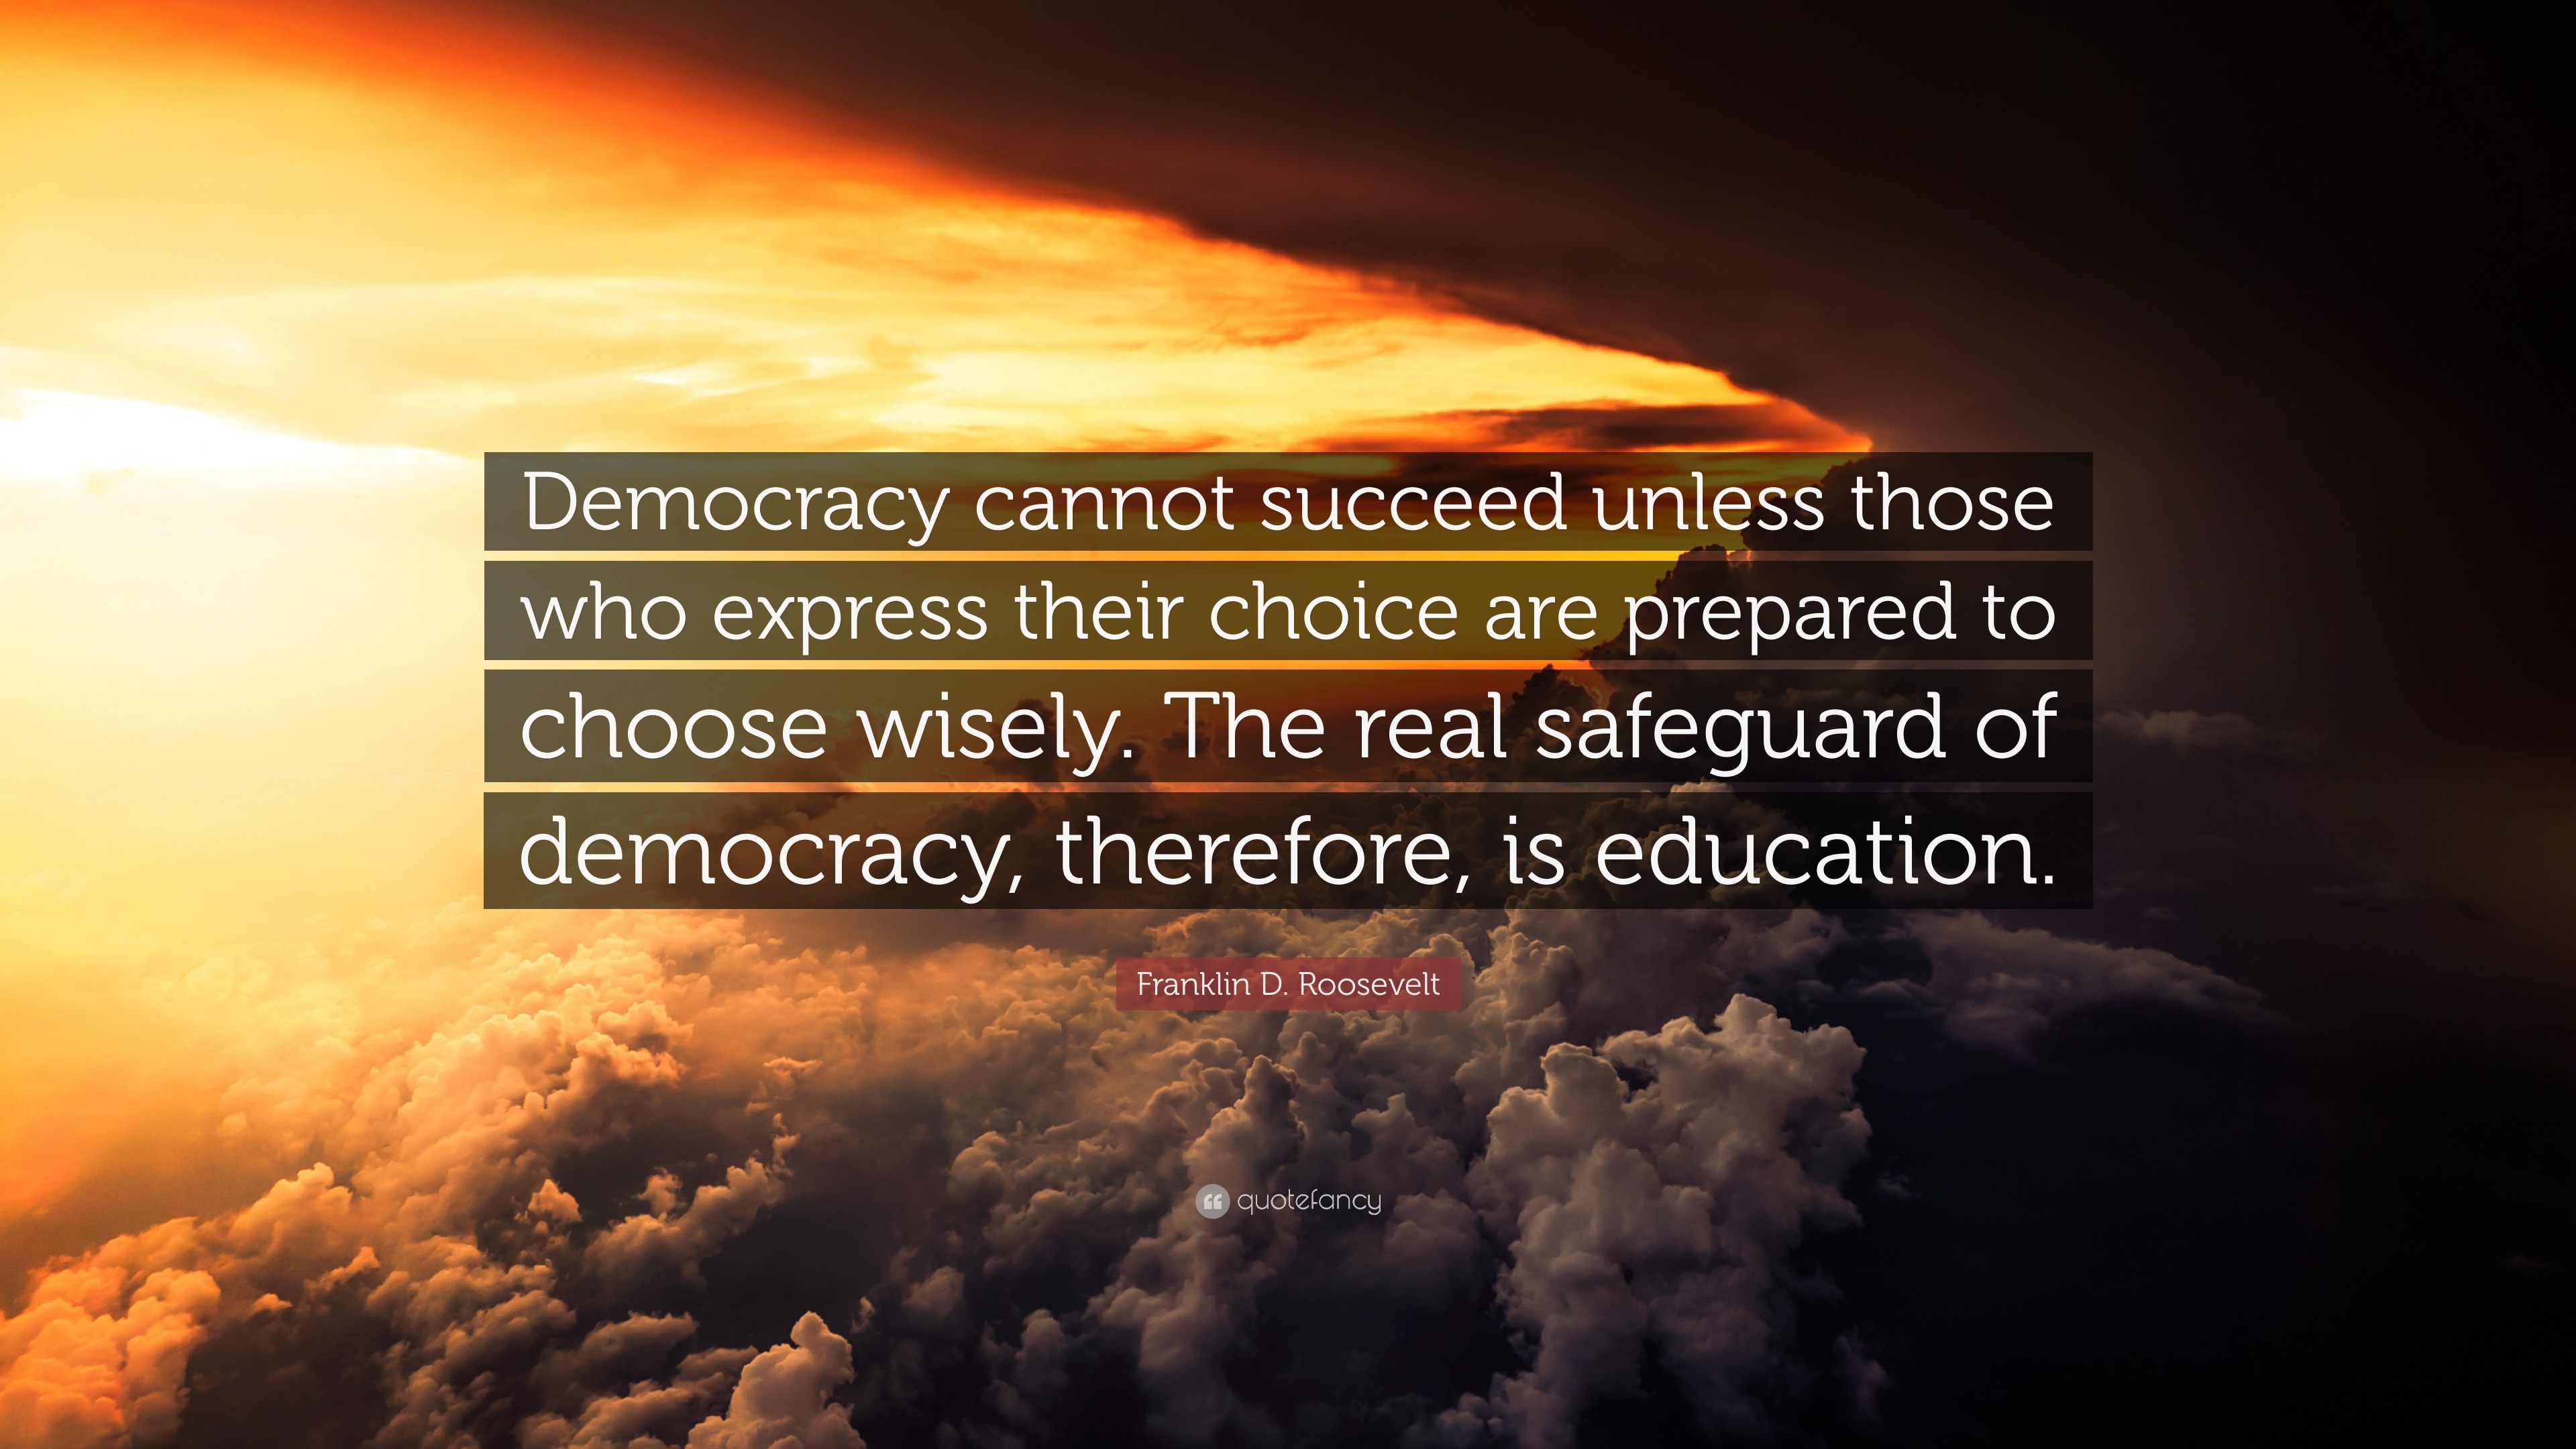 quotes on democracy essay